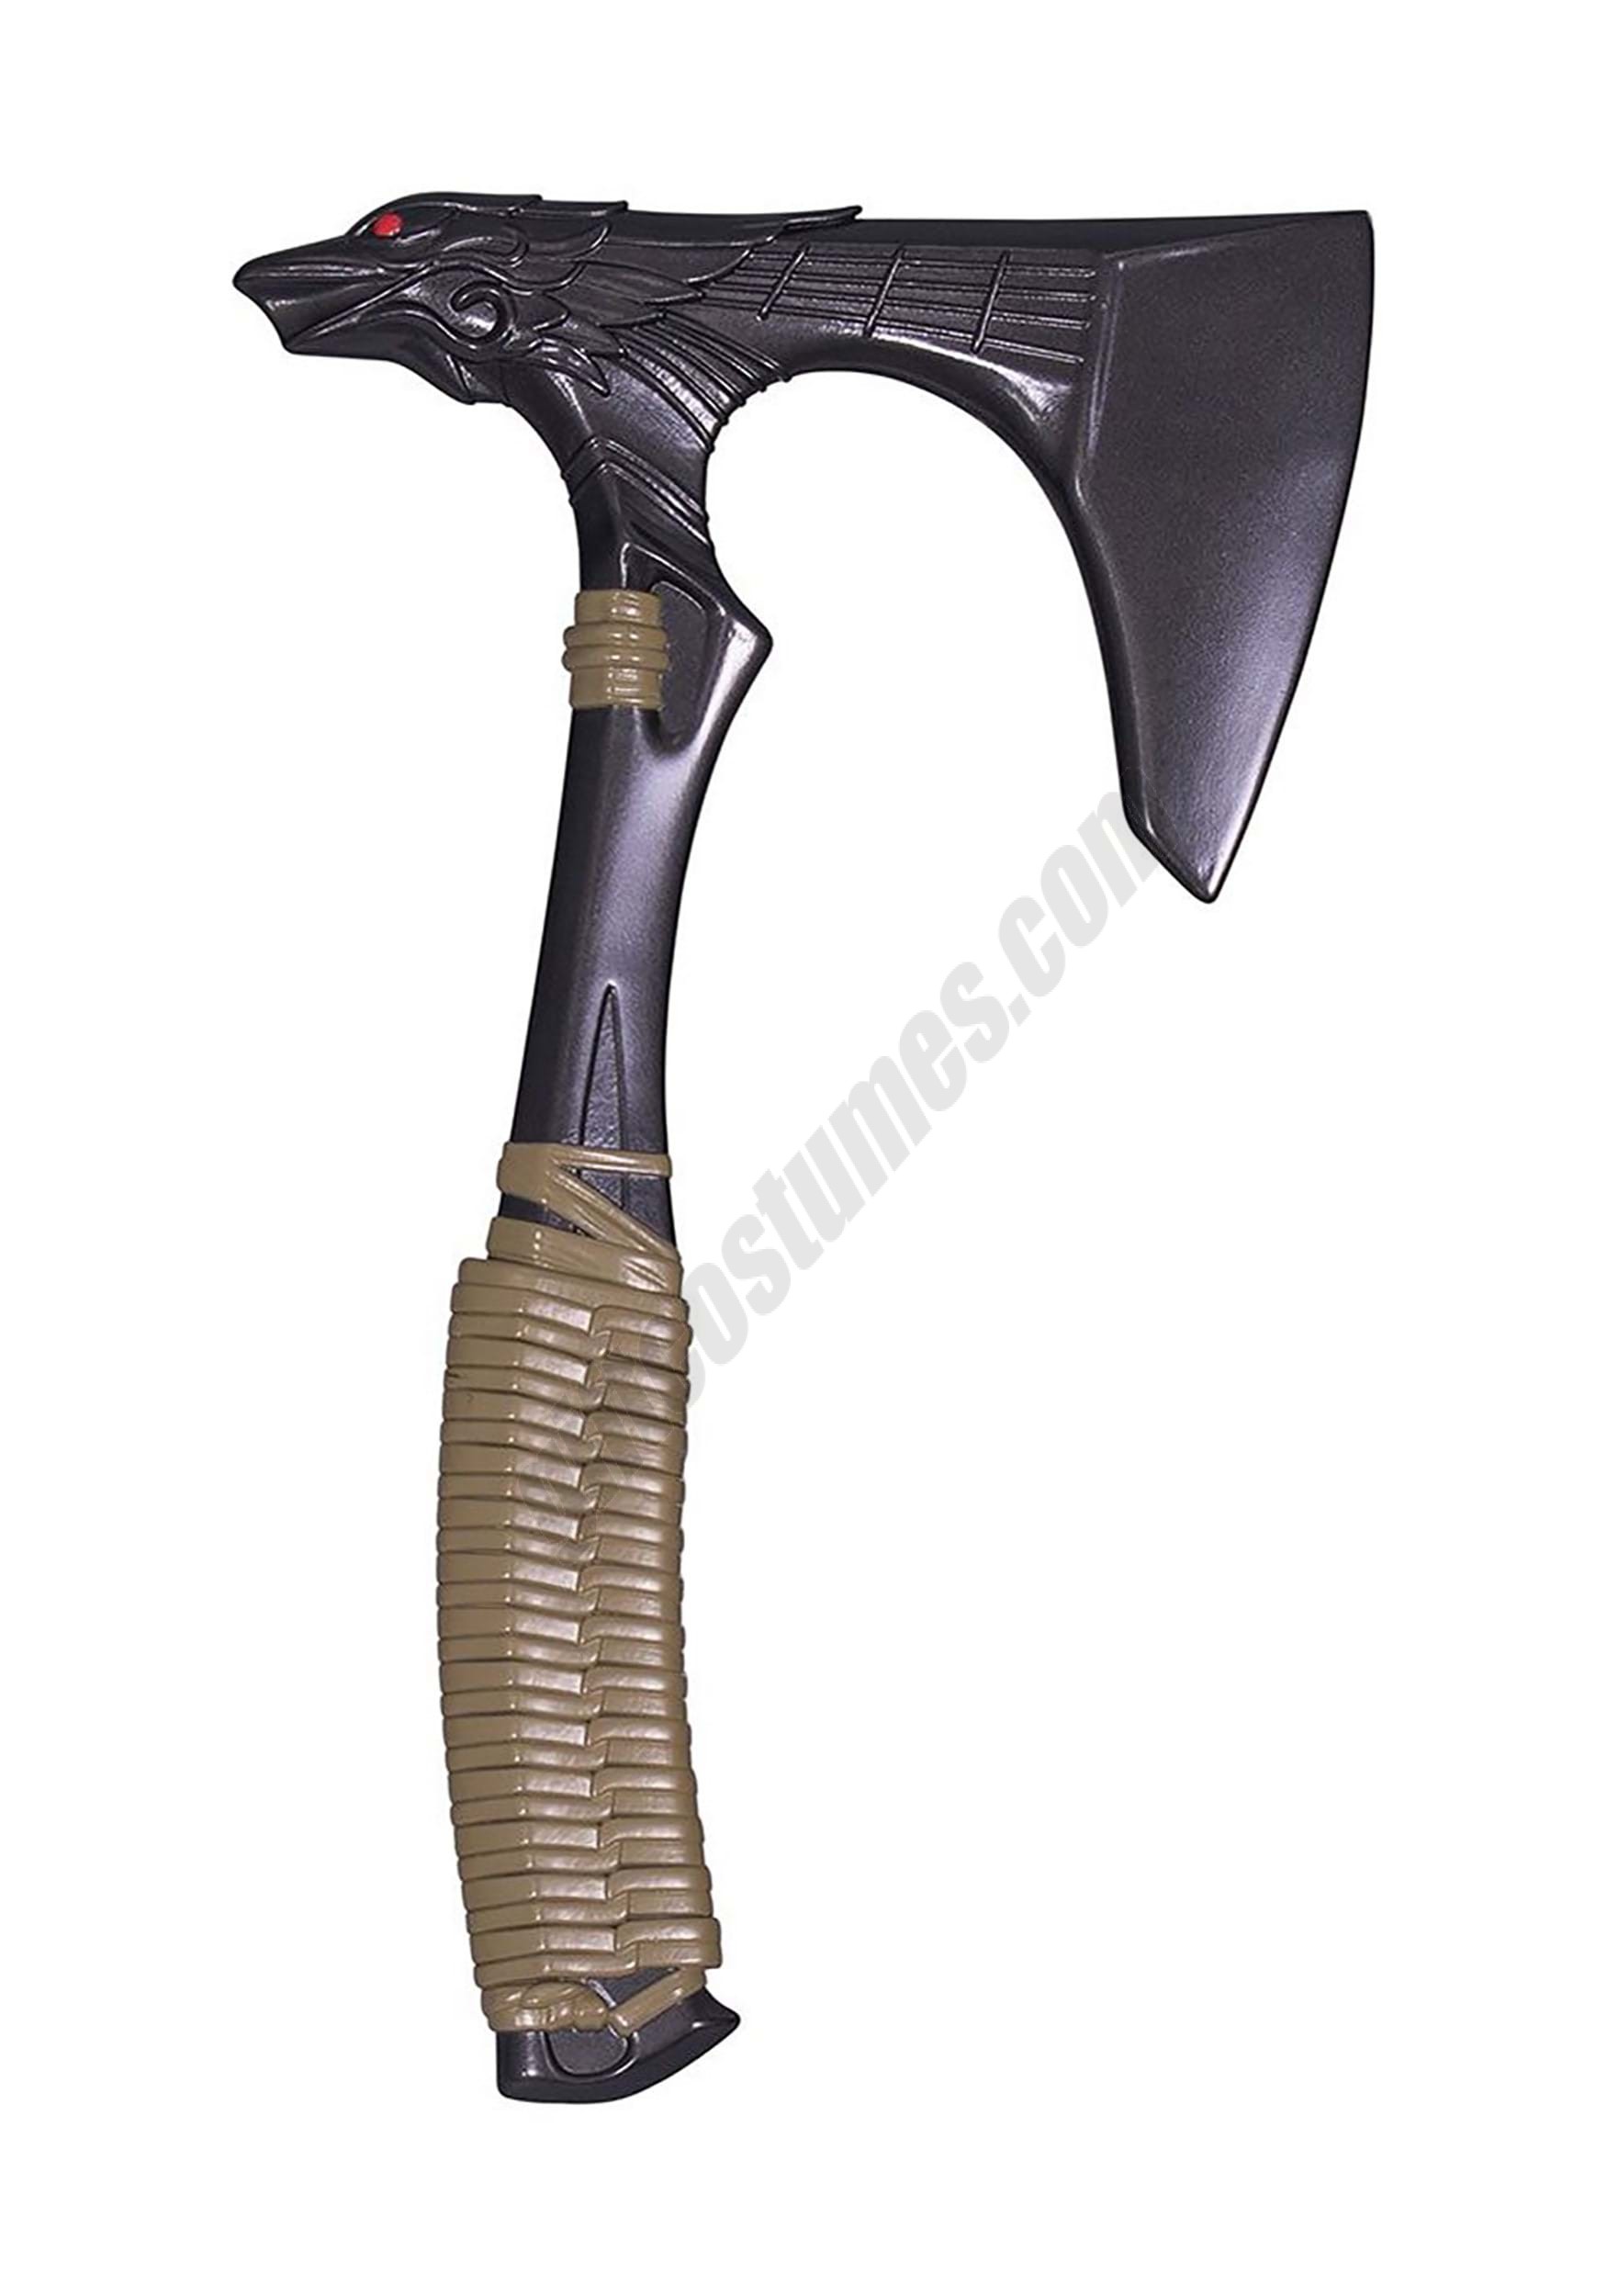 Apex Legends Raven's Bite- Toy Weapon Promotions - Apex Legends Raven's Bite- Toy Weapon Promotions